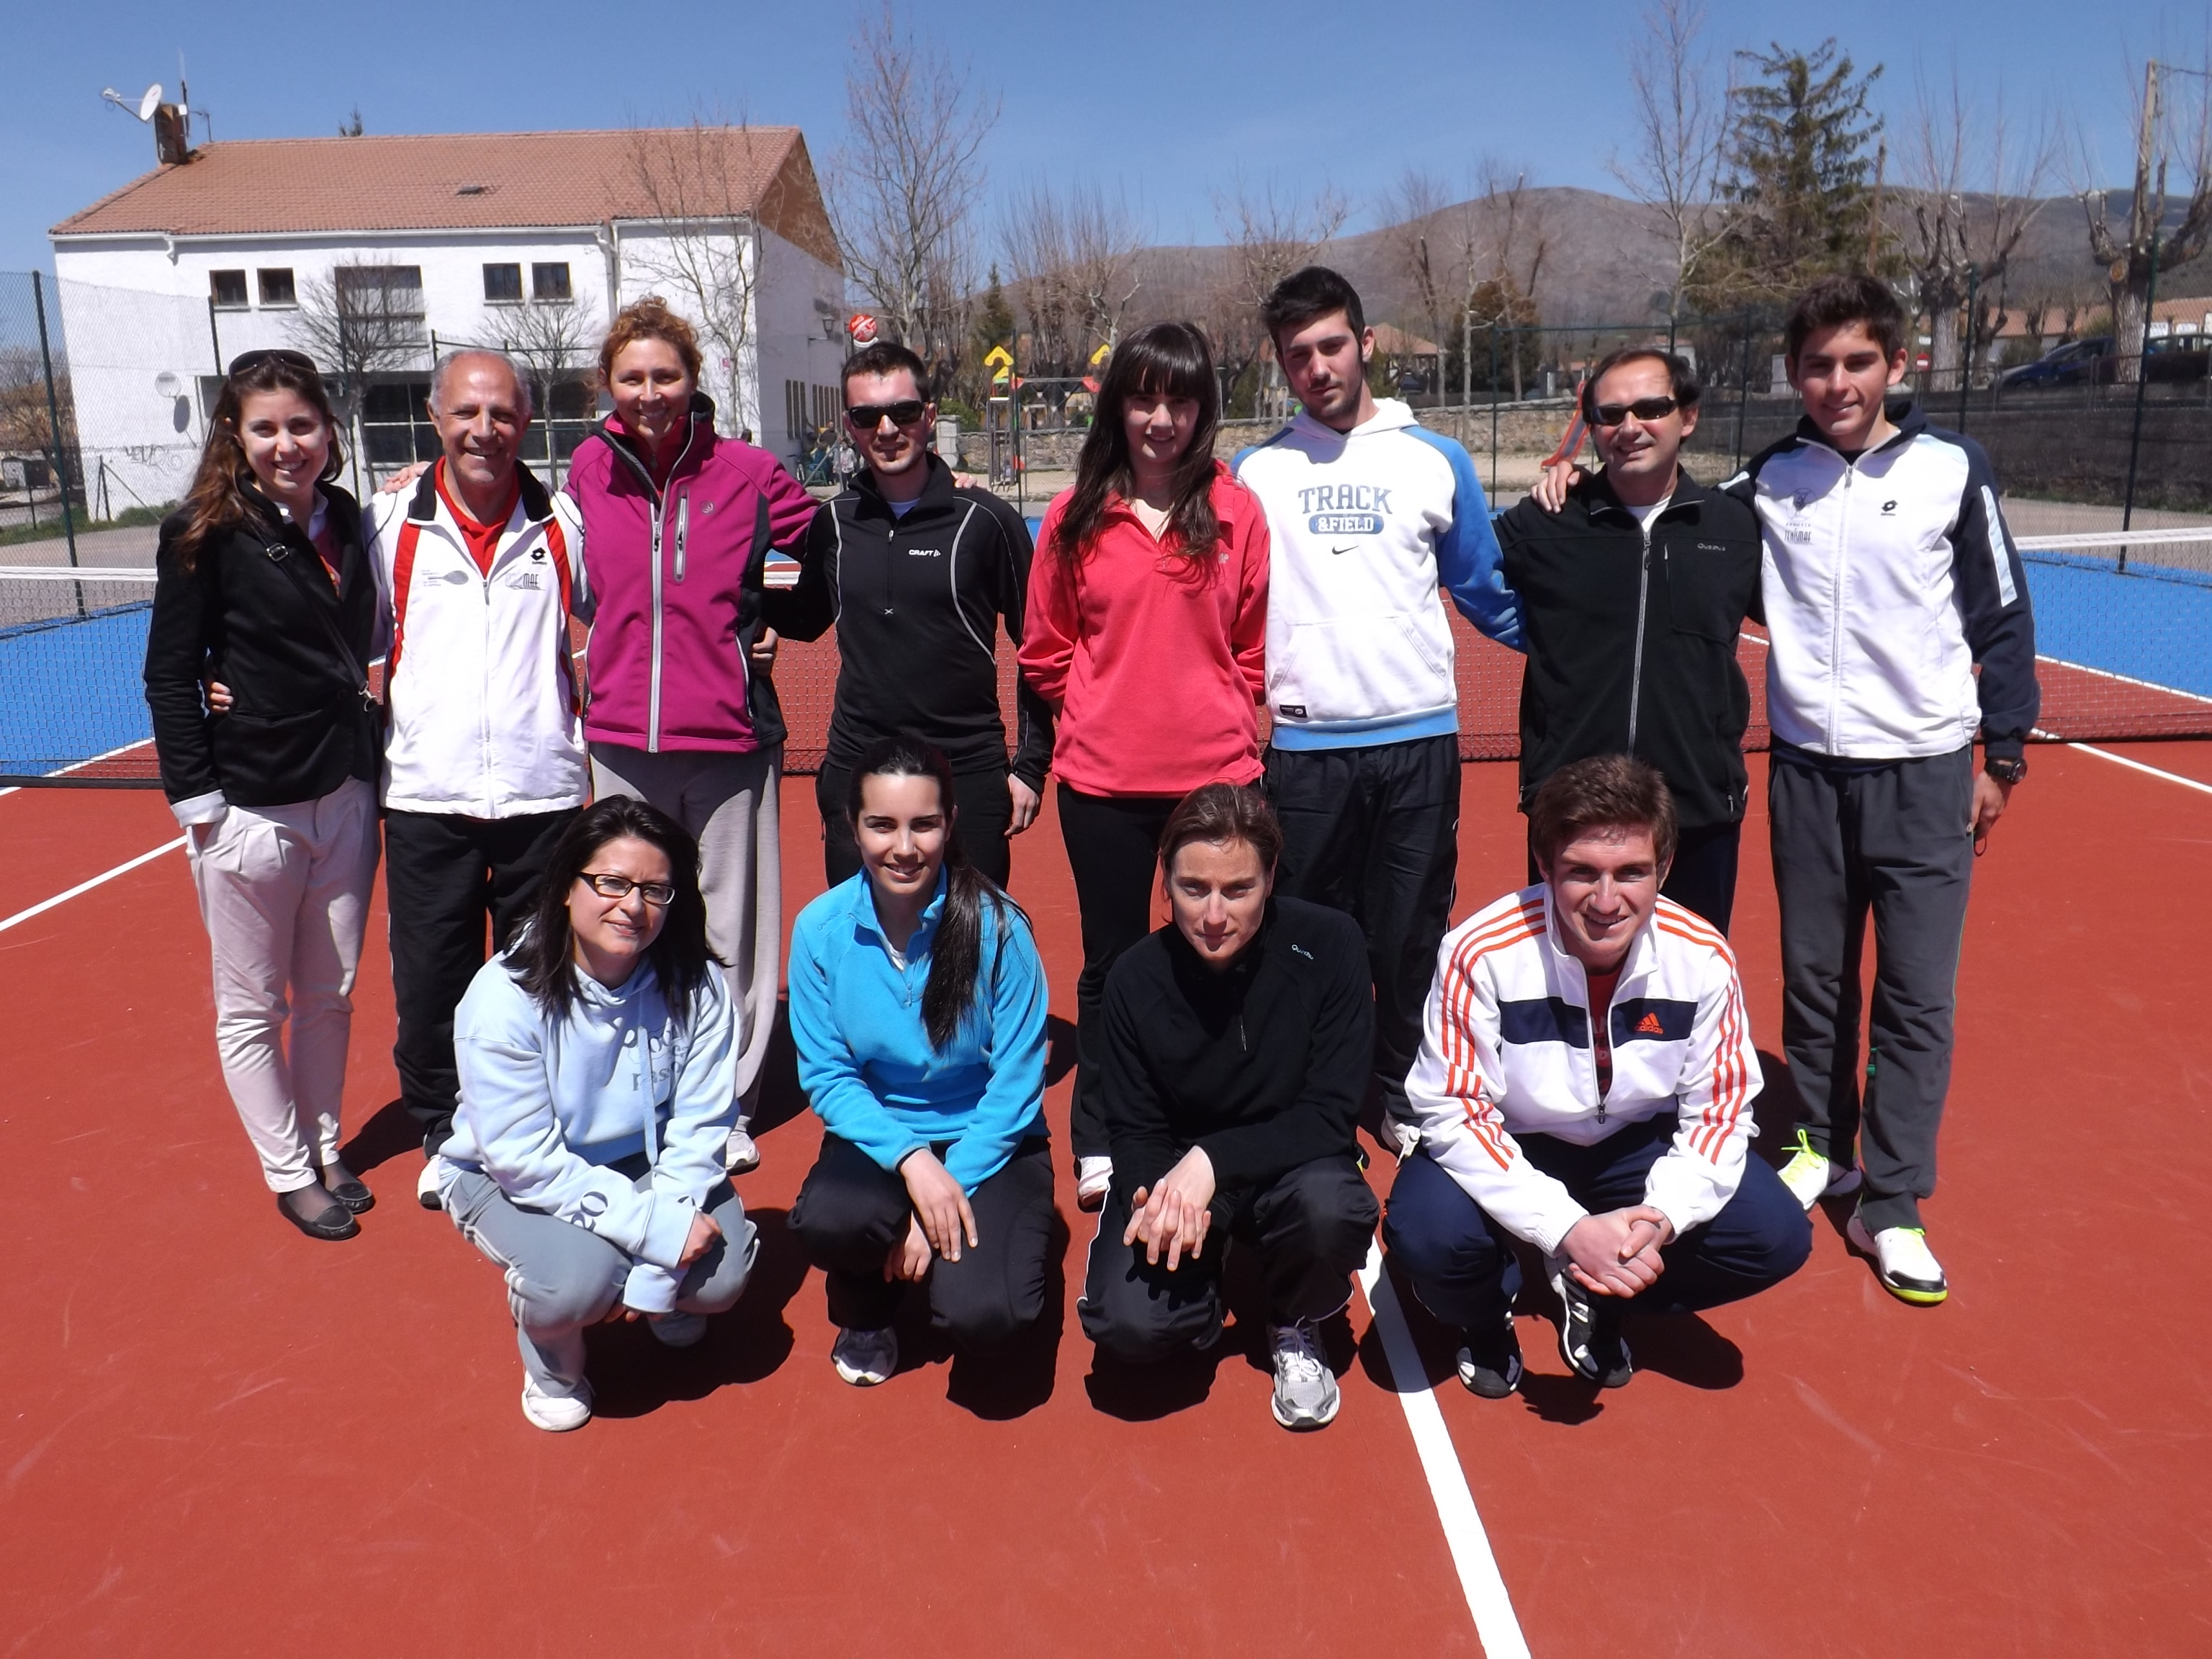 Curso de formación para instructores de tenis